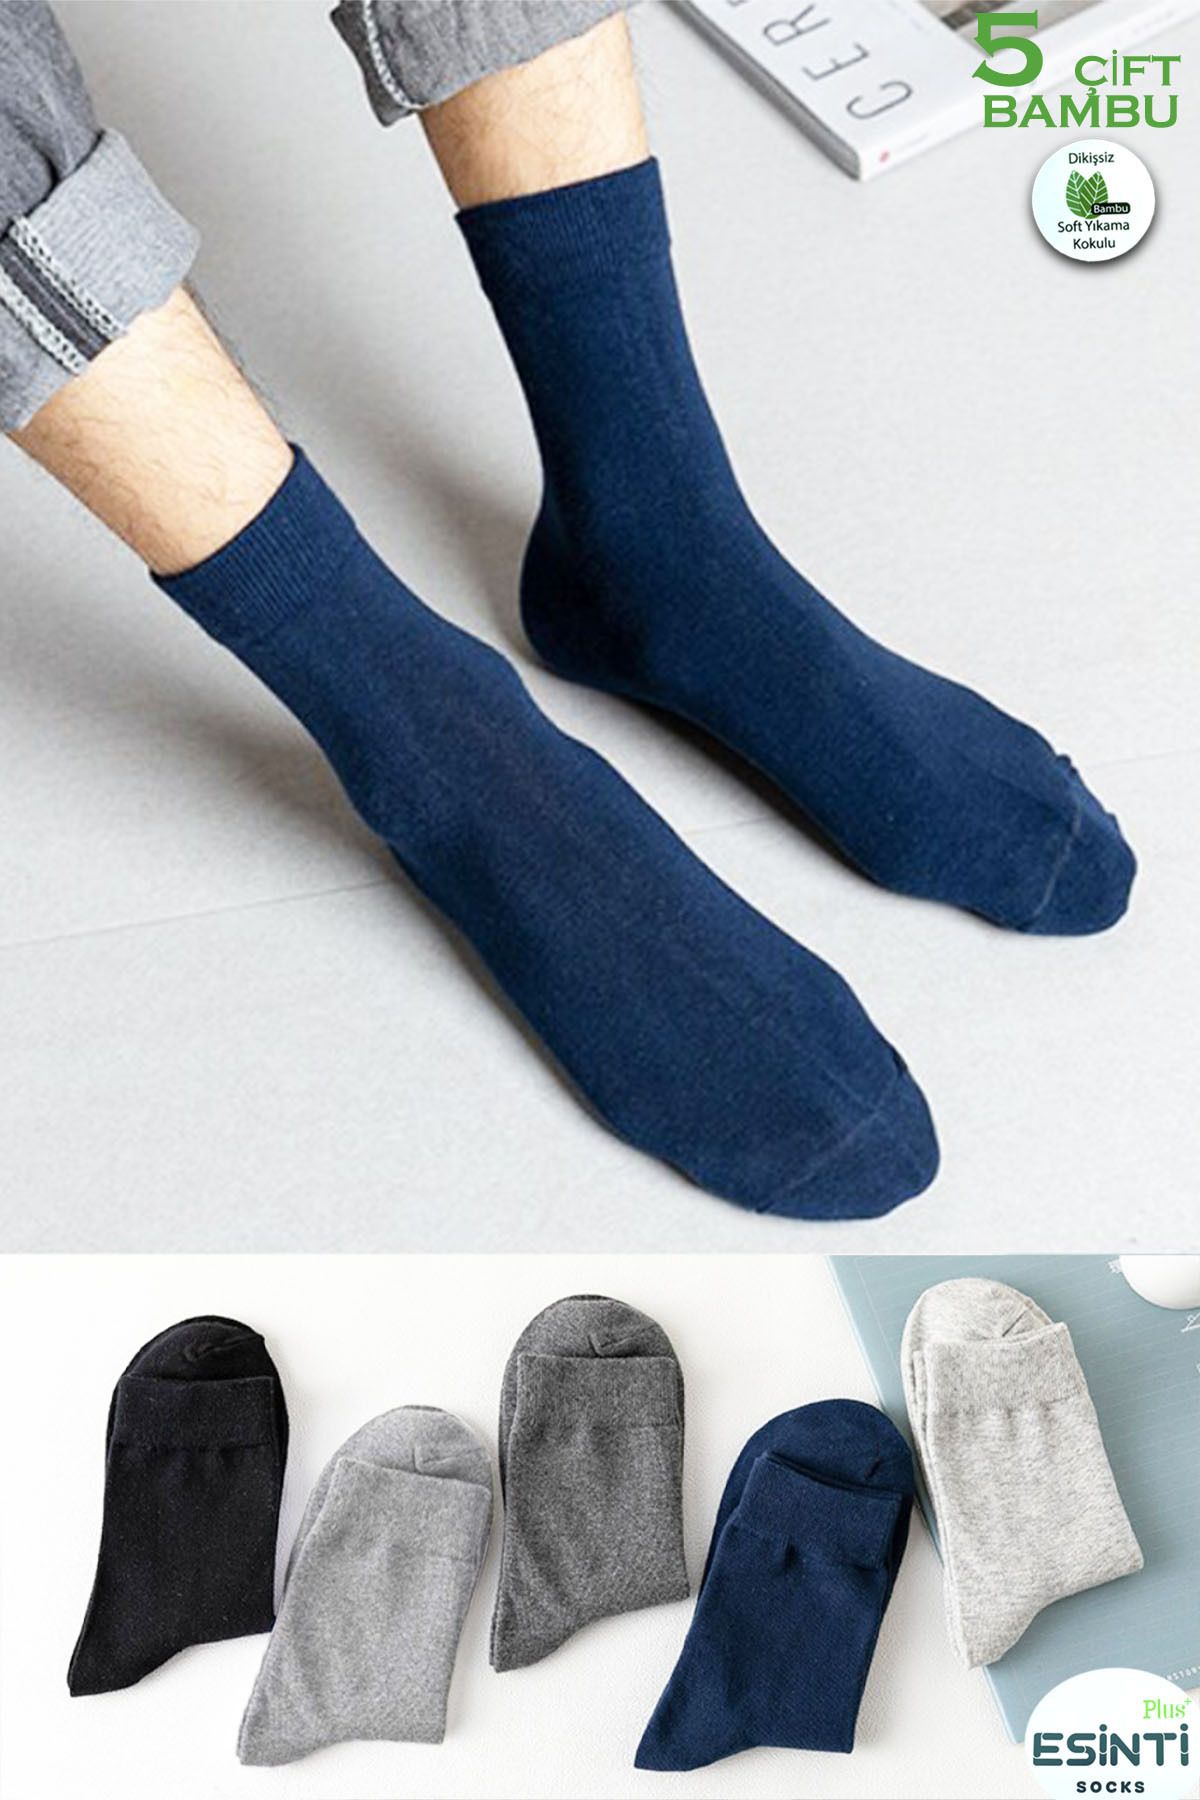 Esinti Erkek Çorap Bambu Kokulu Dikişsiz Klasik Soket Çorap İnce Uzun Erkek Ekonomik Çorap 5 Adet